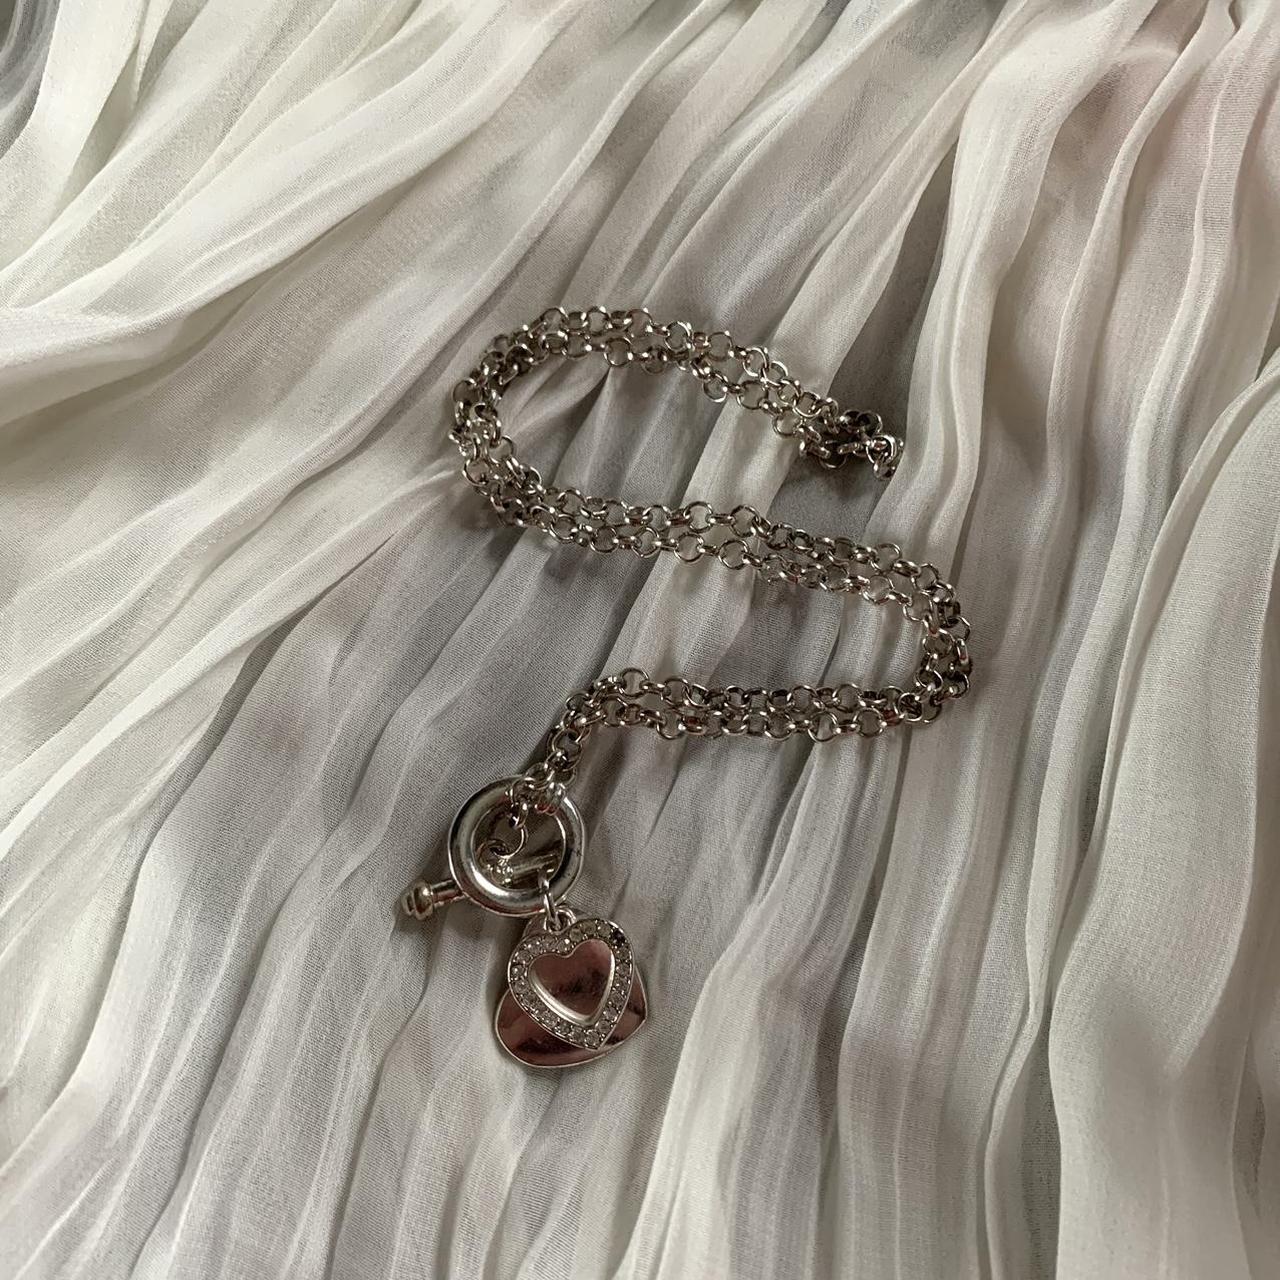 Y2K crystal heart pendant necklace. I believe it is... - Depop